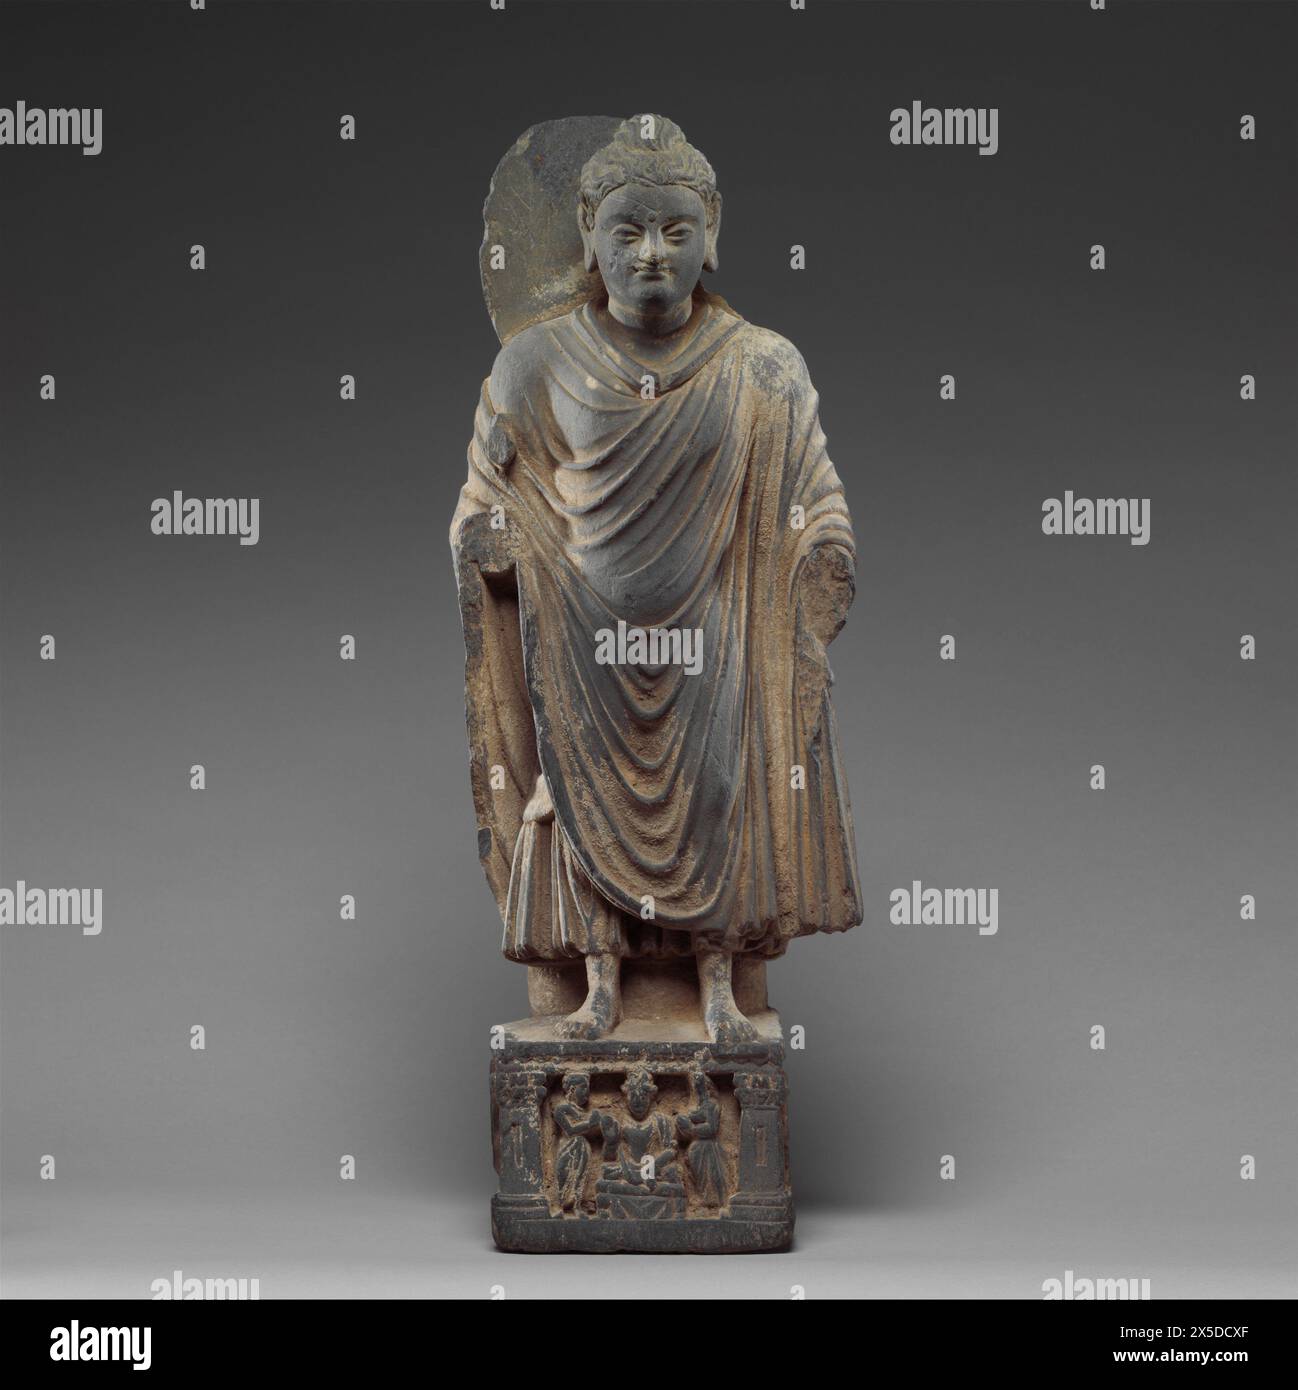 Pakistan: Stehender Buddha, Gandhara, 3. Bis 4. Jahrhundert. Metropolitan Museum of Art, New York. Gandhara ist bekannt für den unverwechselbaren Gandhara-Stil der buddhistischen Kunst, der sich aus einer Verschmelzung von griechischem, syrischem, persischem und indischem künstlerischem Einfluss entwickelte. Diese Entwicklung begann während der parthischen Zeit (50 v. Chr. – 75 v. Chr.). Der Gandharan-Stil blühte und erreichte seinen Höhepunkt während der Kushan-Zeit vom 1. Bis zum 5. Jahrhundert. Stockfoto